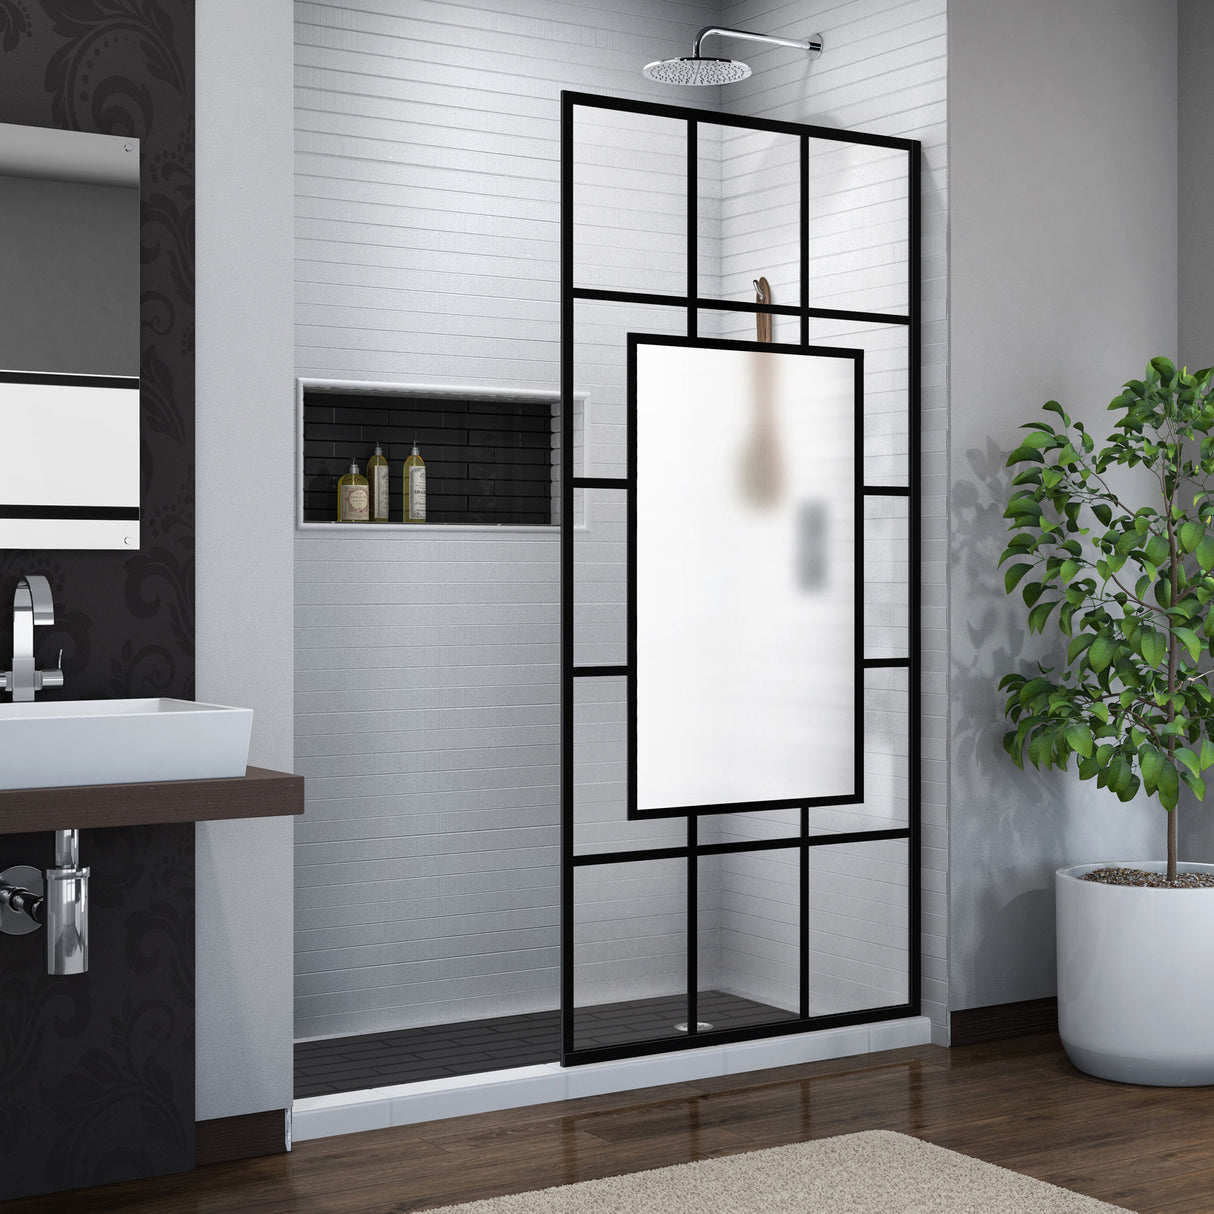 DreamLine French Linea Avignon 34 in. W x 72 in. H Single Panel Frameless Shower Door, Open Entry Design in Satin Black